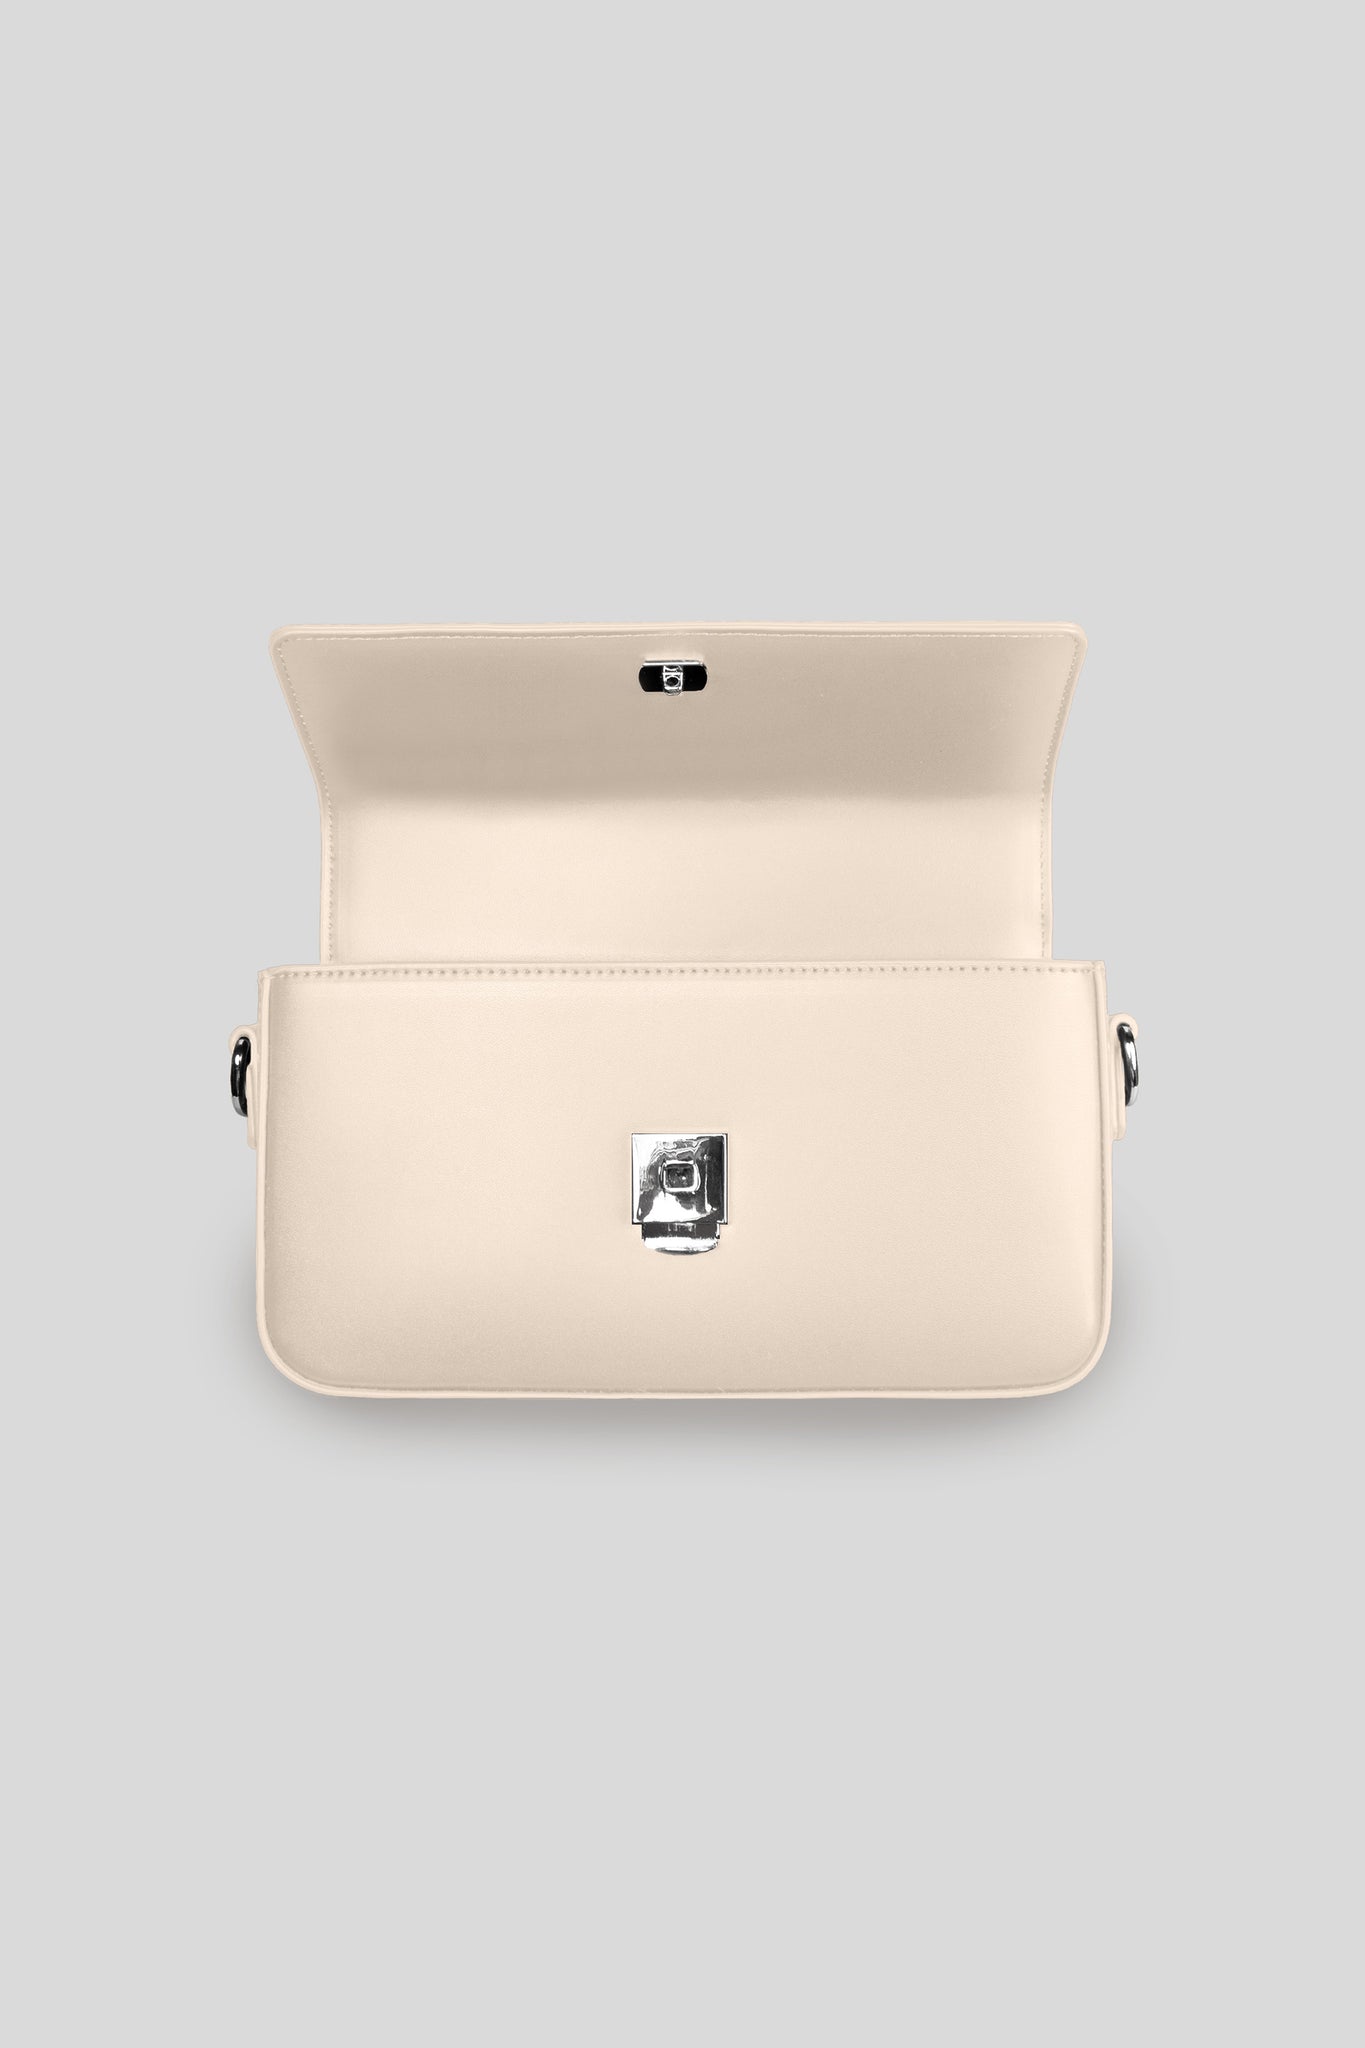 Vegan Leather Bag — Cream - HORATI